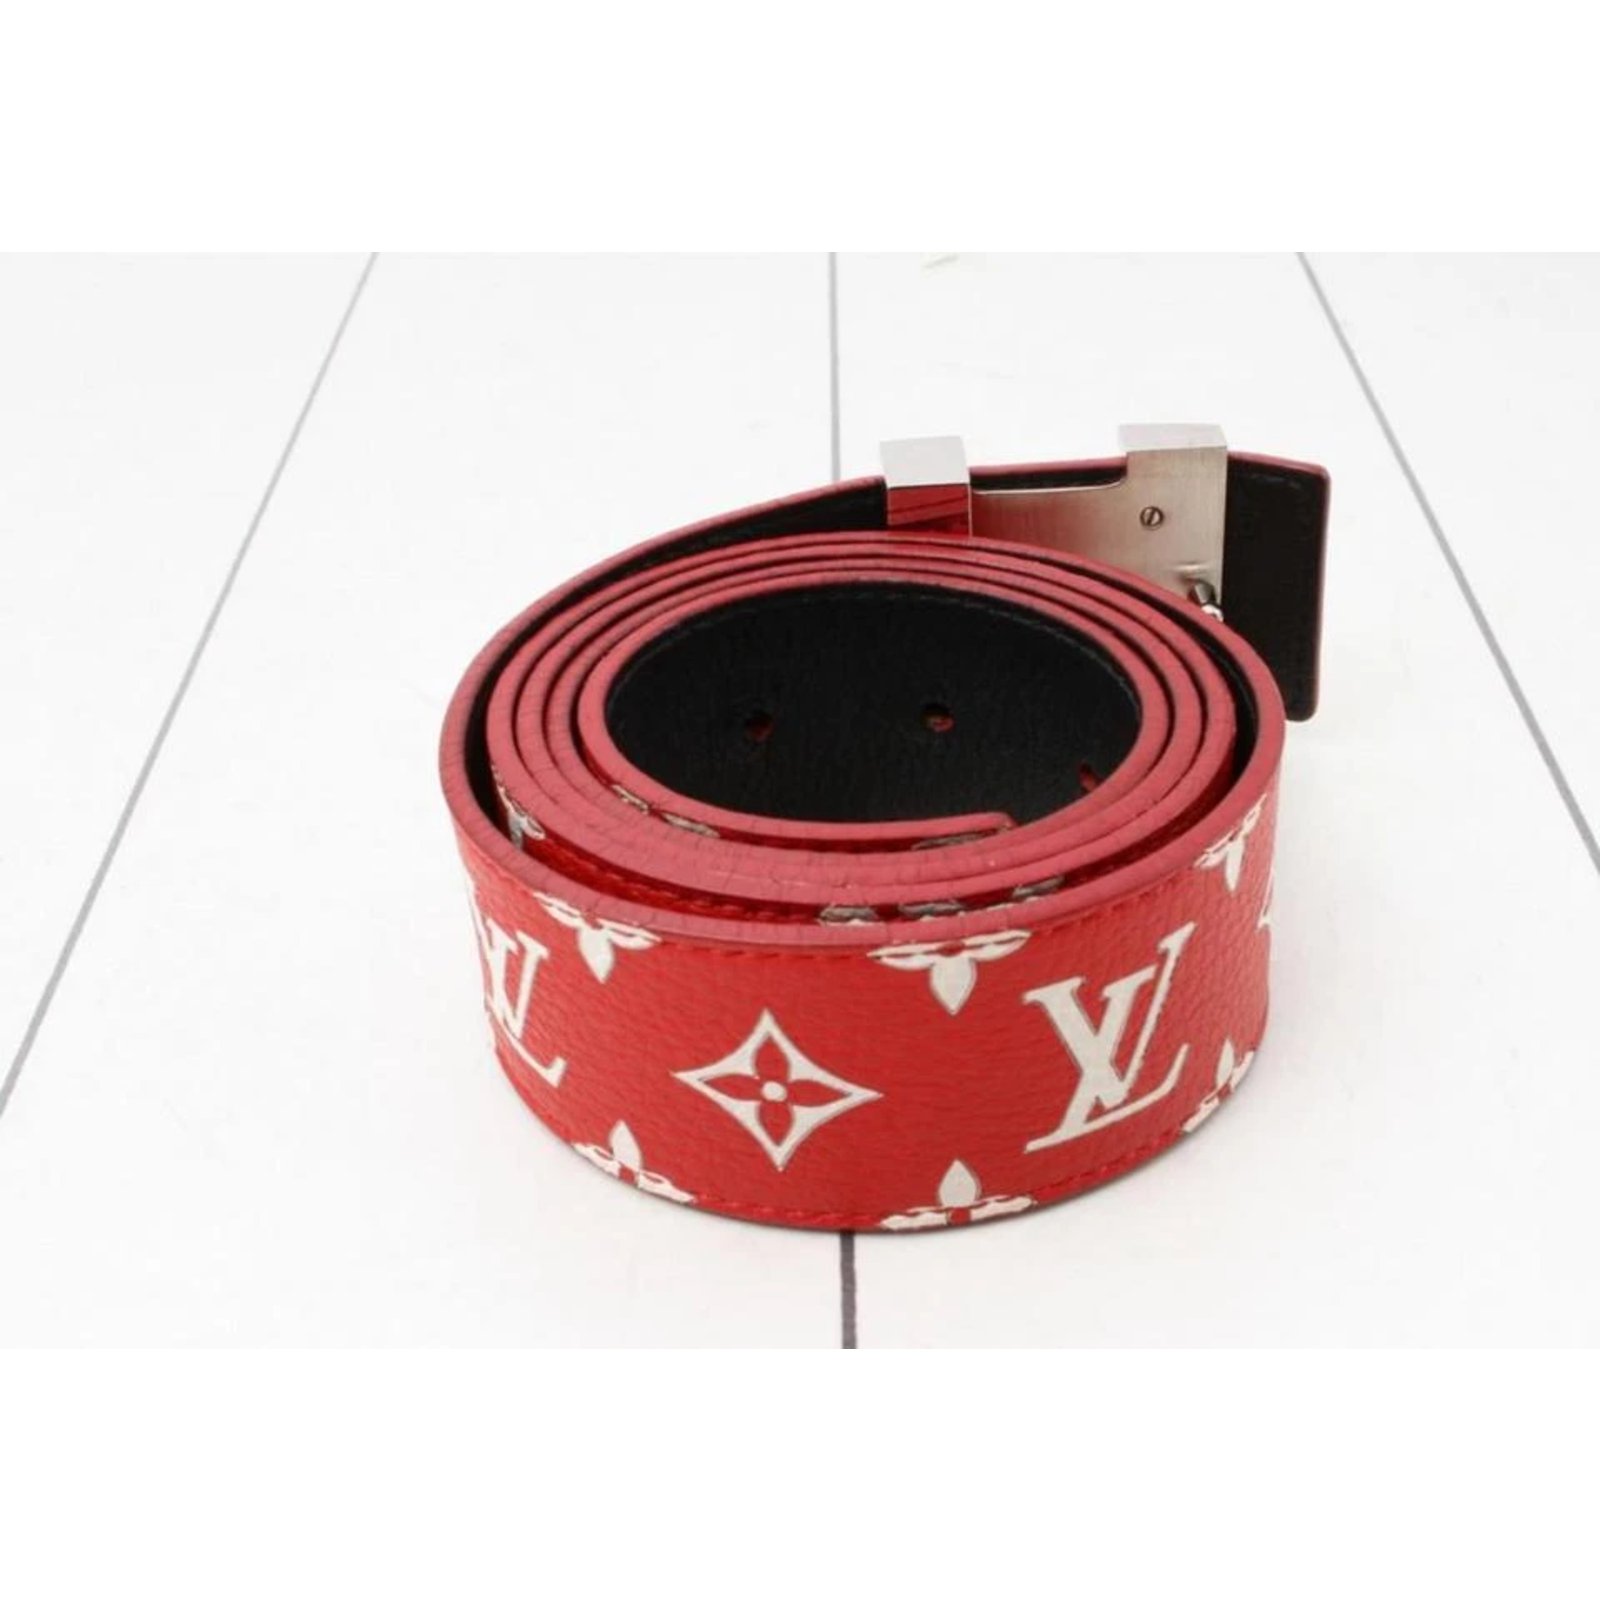 Replica Louis Vuitton Supreme Monogram Cintura Rossa In Vendita Con Prezzo  Economico Al Falso Negozio Di Borse